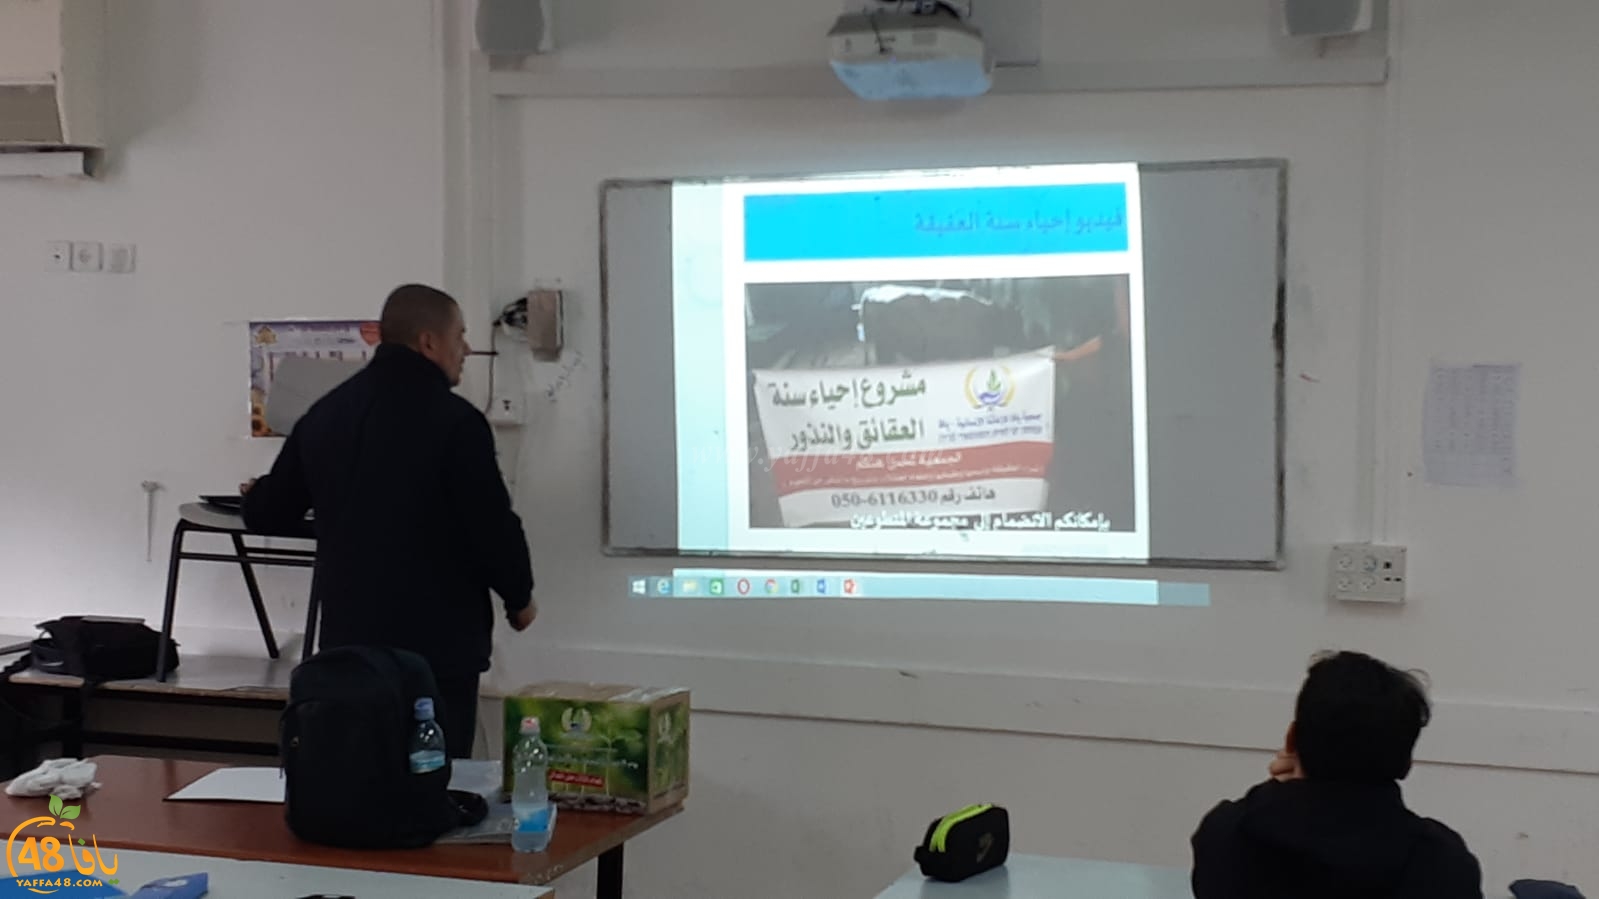 بالفيديو: جمعية يافا تُطلق المرحلة الأولى من حملة الاحسان والصدقات في مدينة يافا 